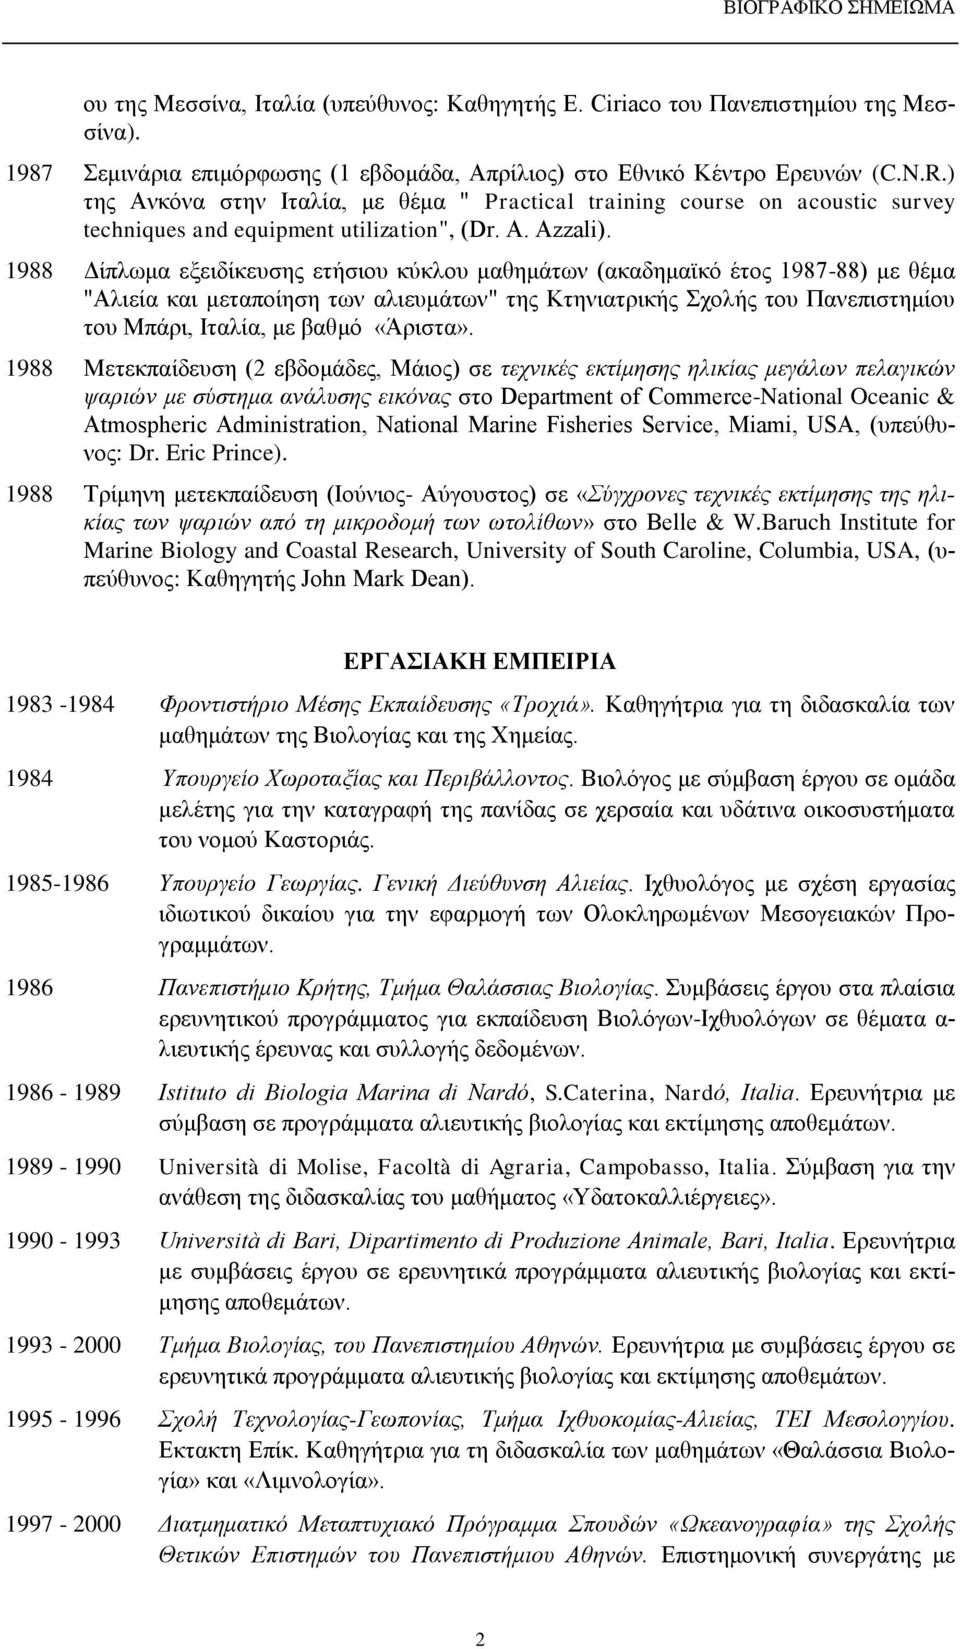 1988 Δίπλωμα εξειδίκευσης ετήσιου κύκλου μαθημάτων (ακαδημαϊκό έτος 1987-88) με θέμα "Αλιεία και μεταποίηση των αλιευμάτων" της Κτηνιατρικής Σχολής του Πανεπιστημίου του Μπάρι, Ιταλία, με βαθμό